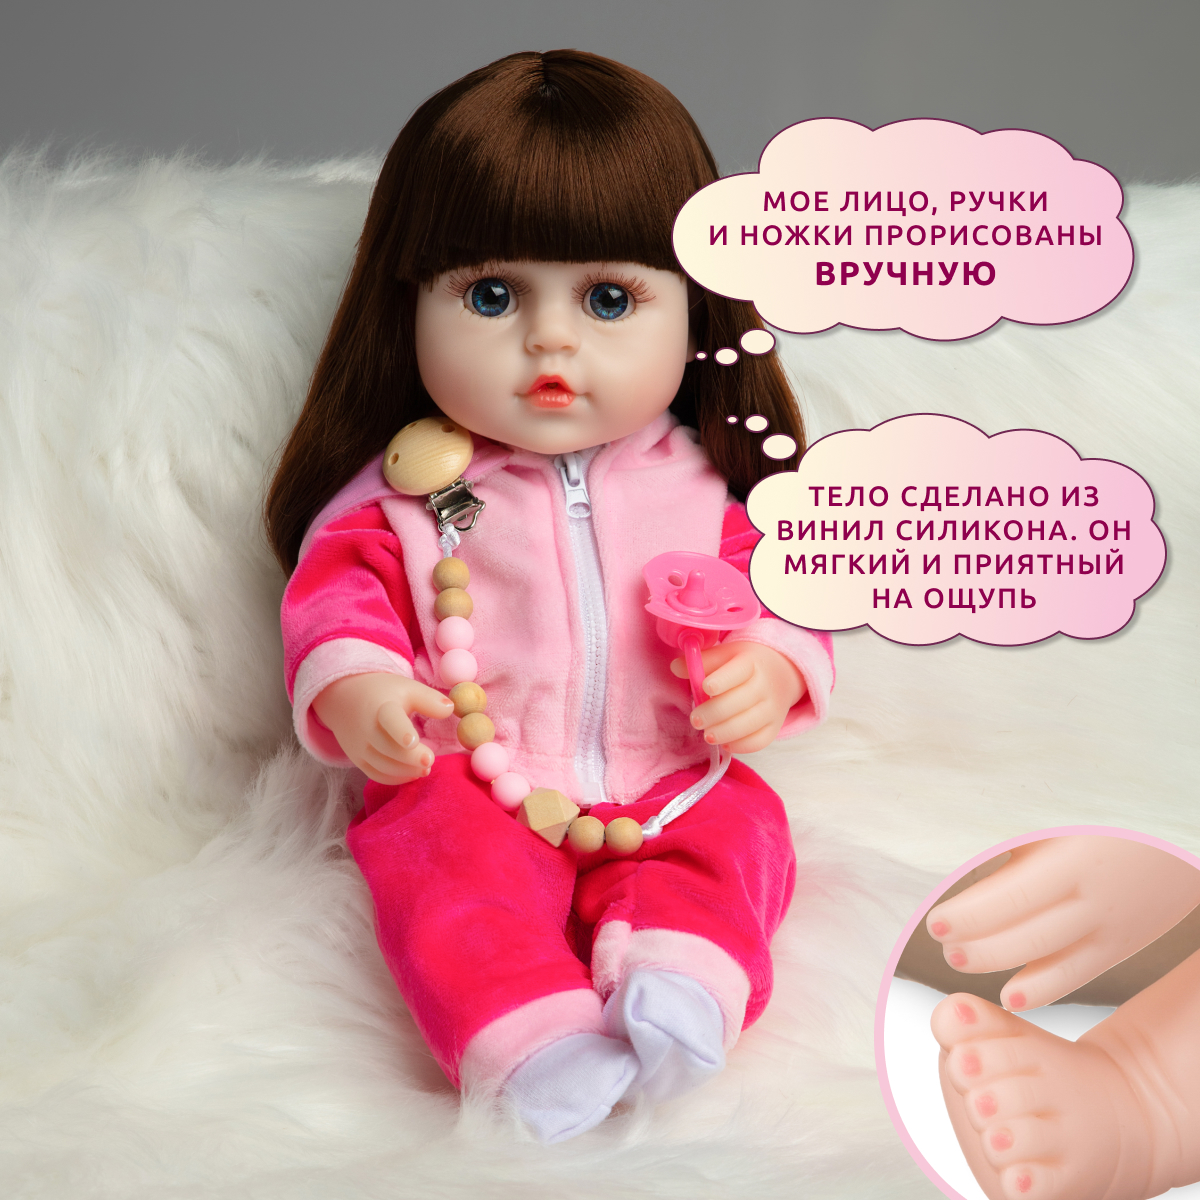 Кукла Реборн QA BABY Натали девочка интерактивная Пупс набор игрушки для ванной для девочки 38 см 3809 - фото 5